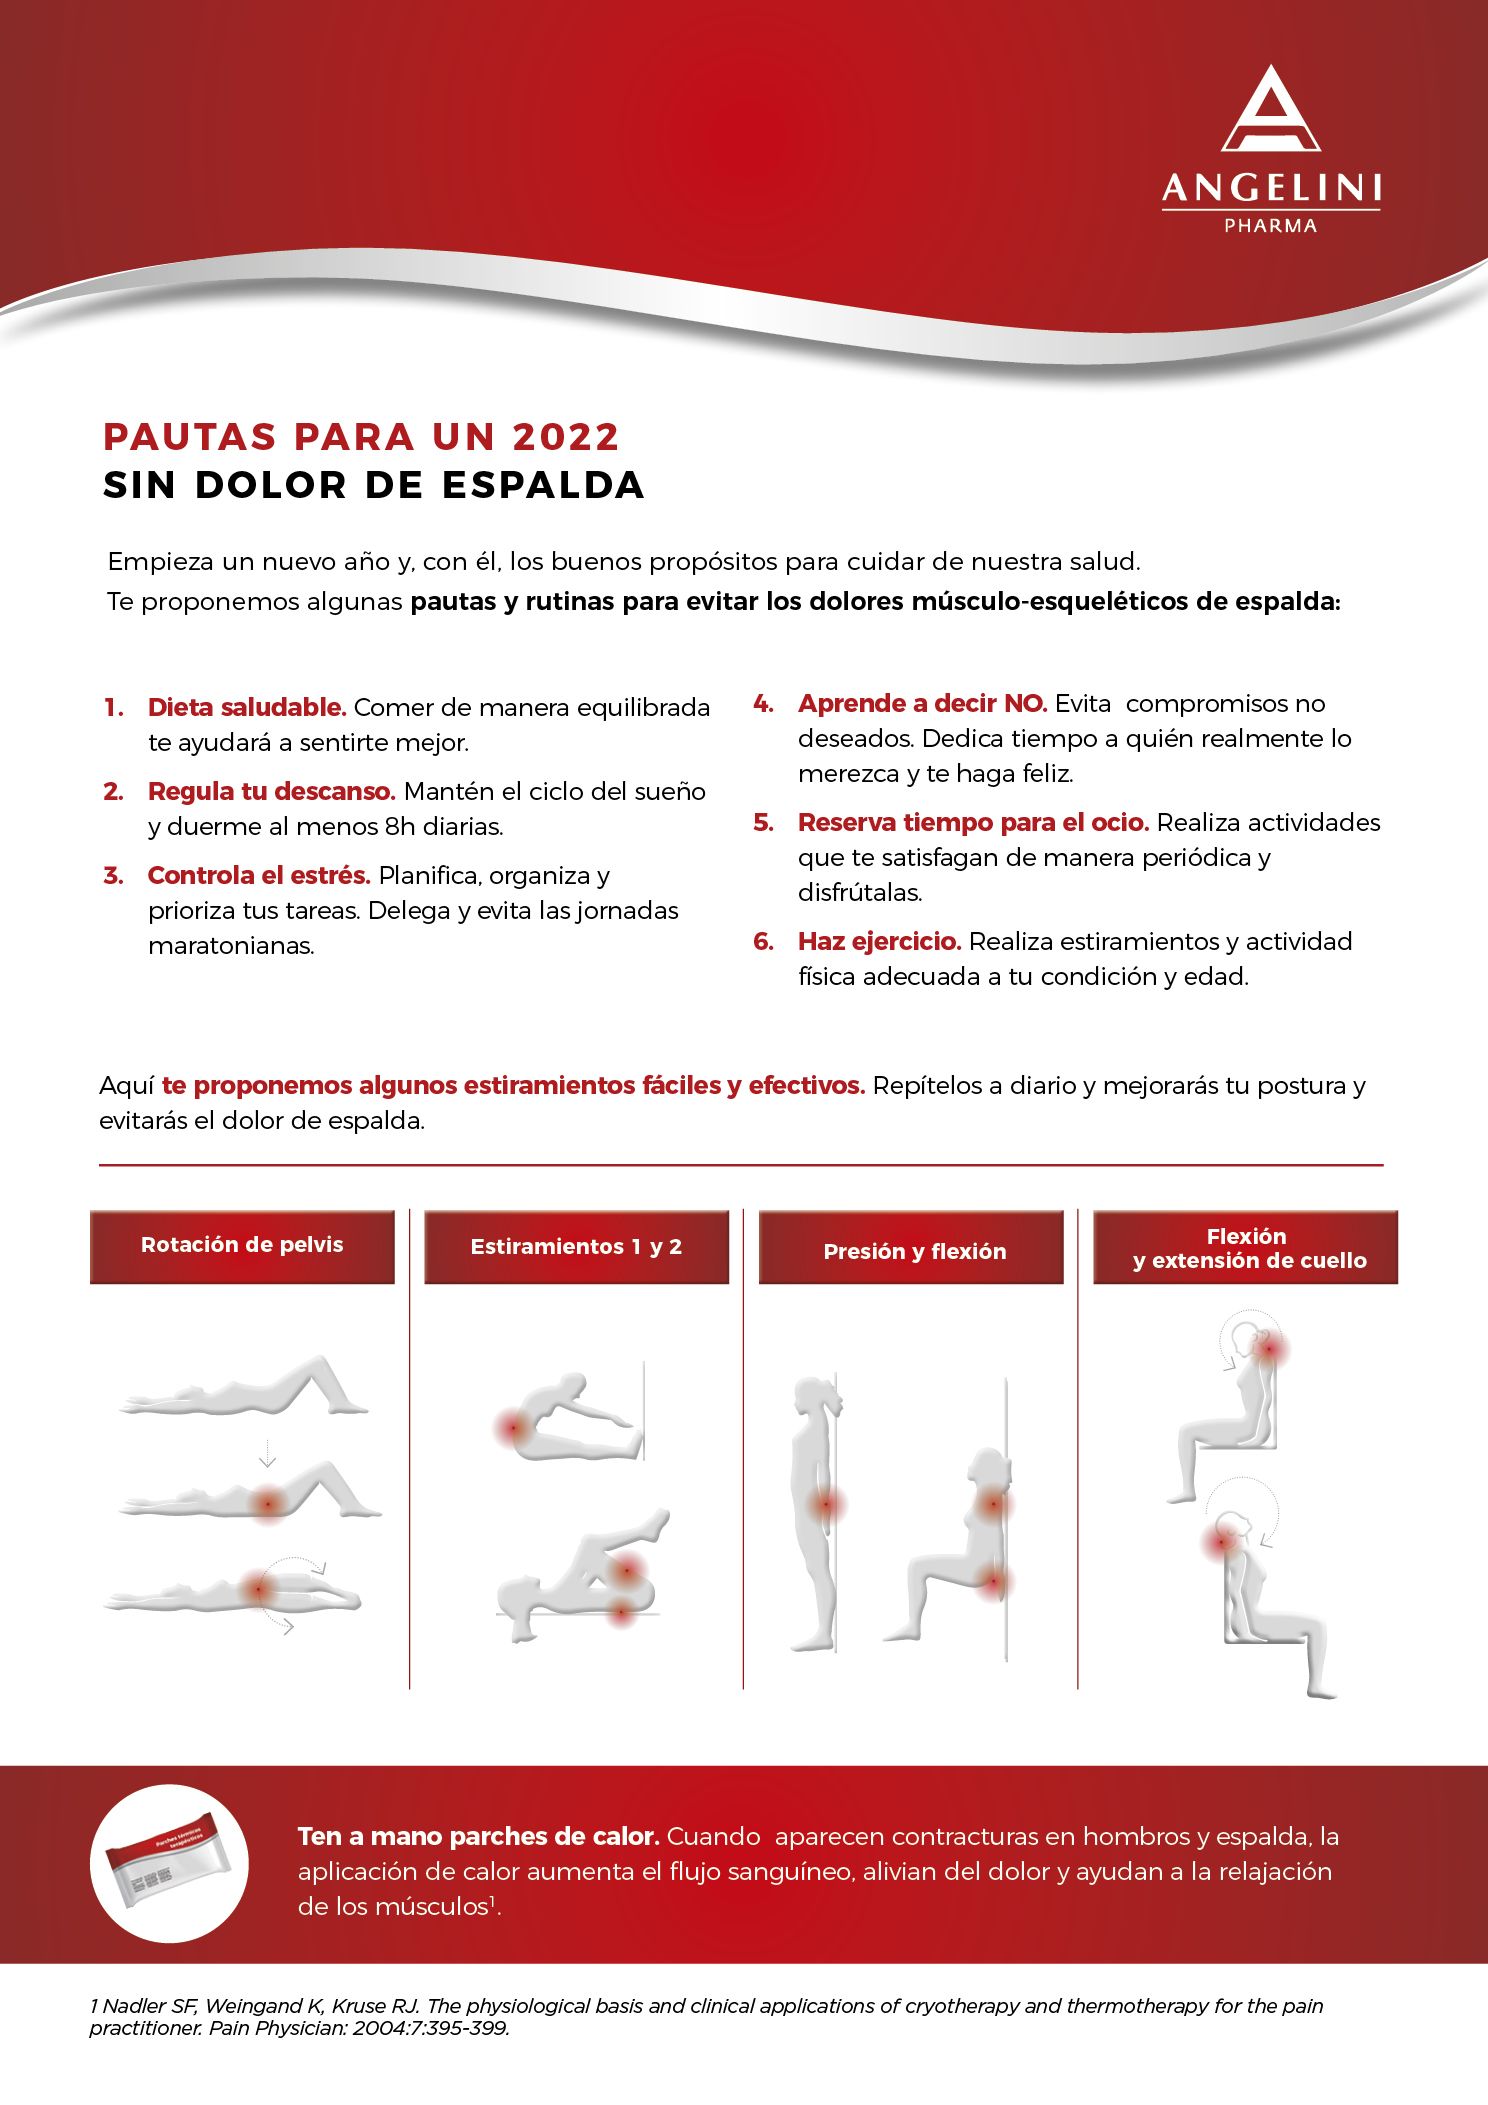 Pablo de la Serna propone pautas y ejercicios para un 2022 sin dolor de espalda